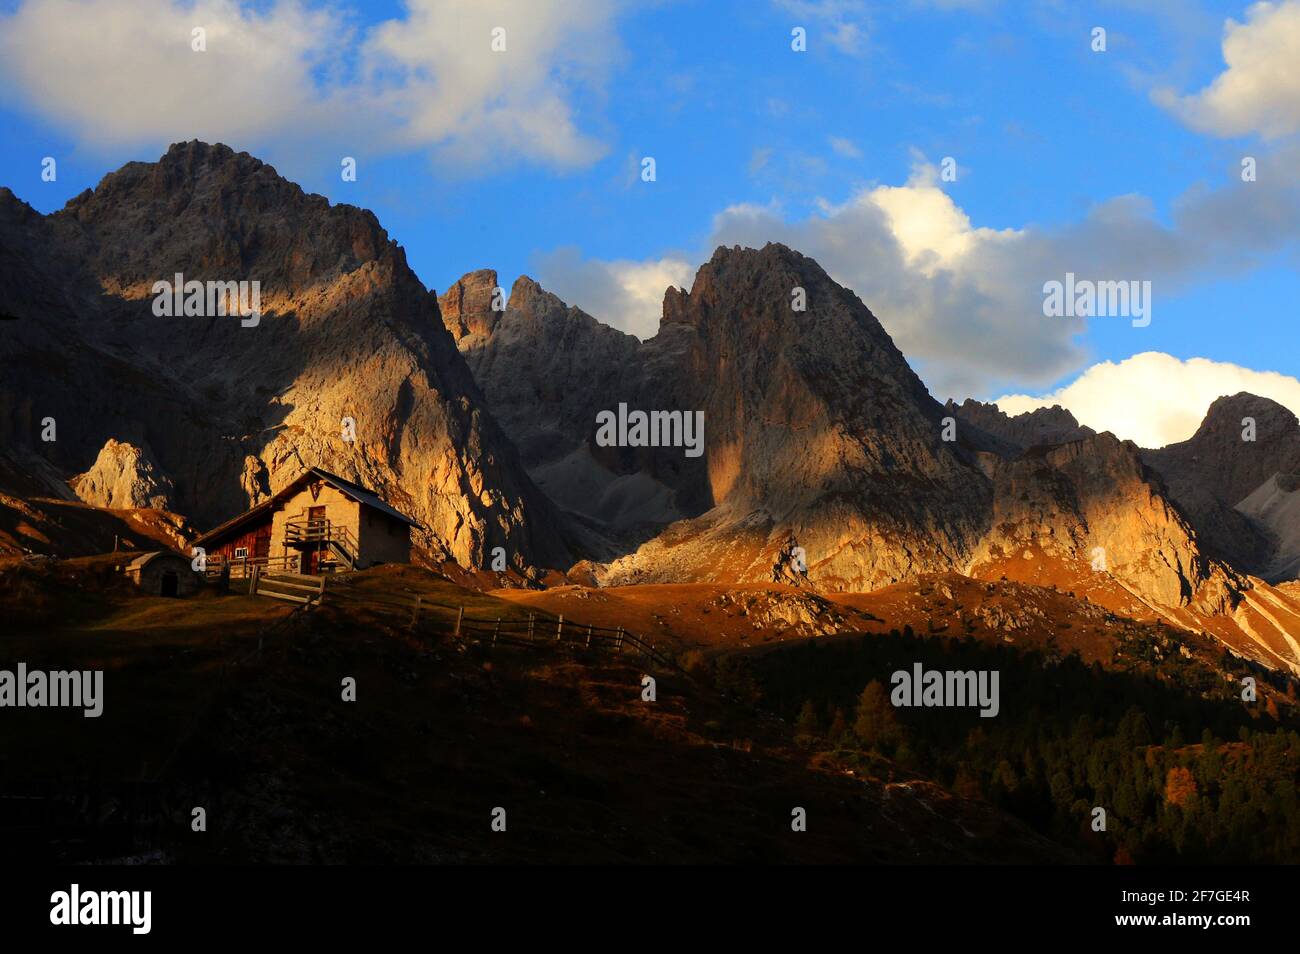 Dolomiti, Dolomiti, Südtirol, Italien, vom Licht angestrahlte Berghütte unter den Geislerspitzen im Villnöss in den Dolomiten Foto Stock